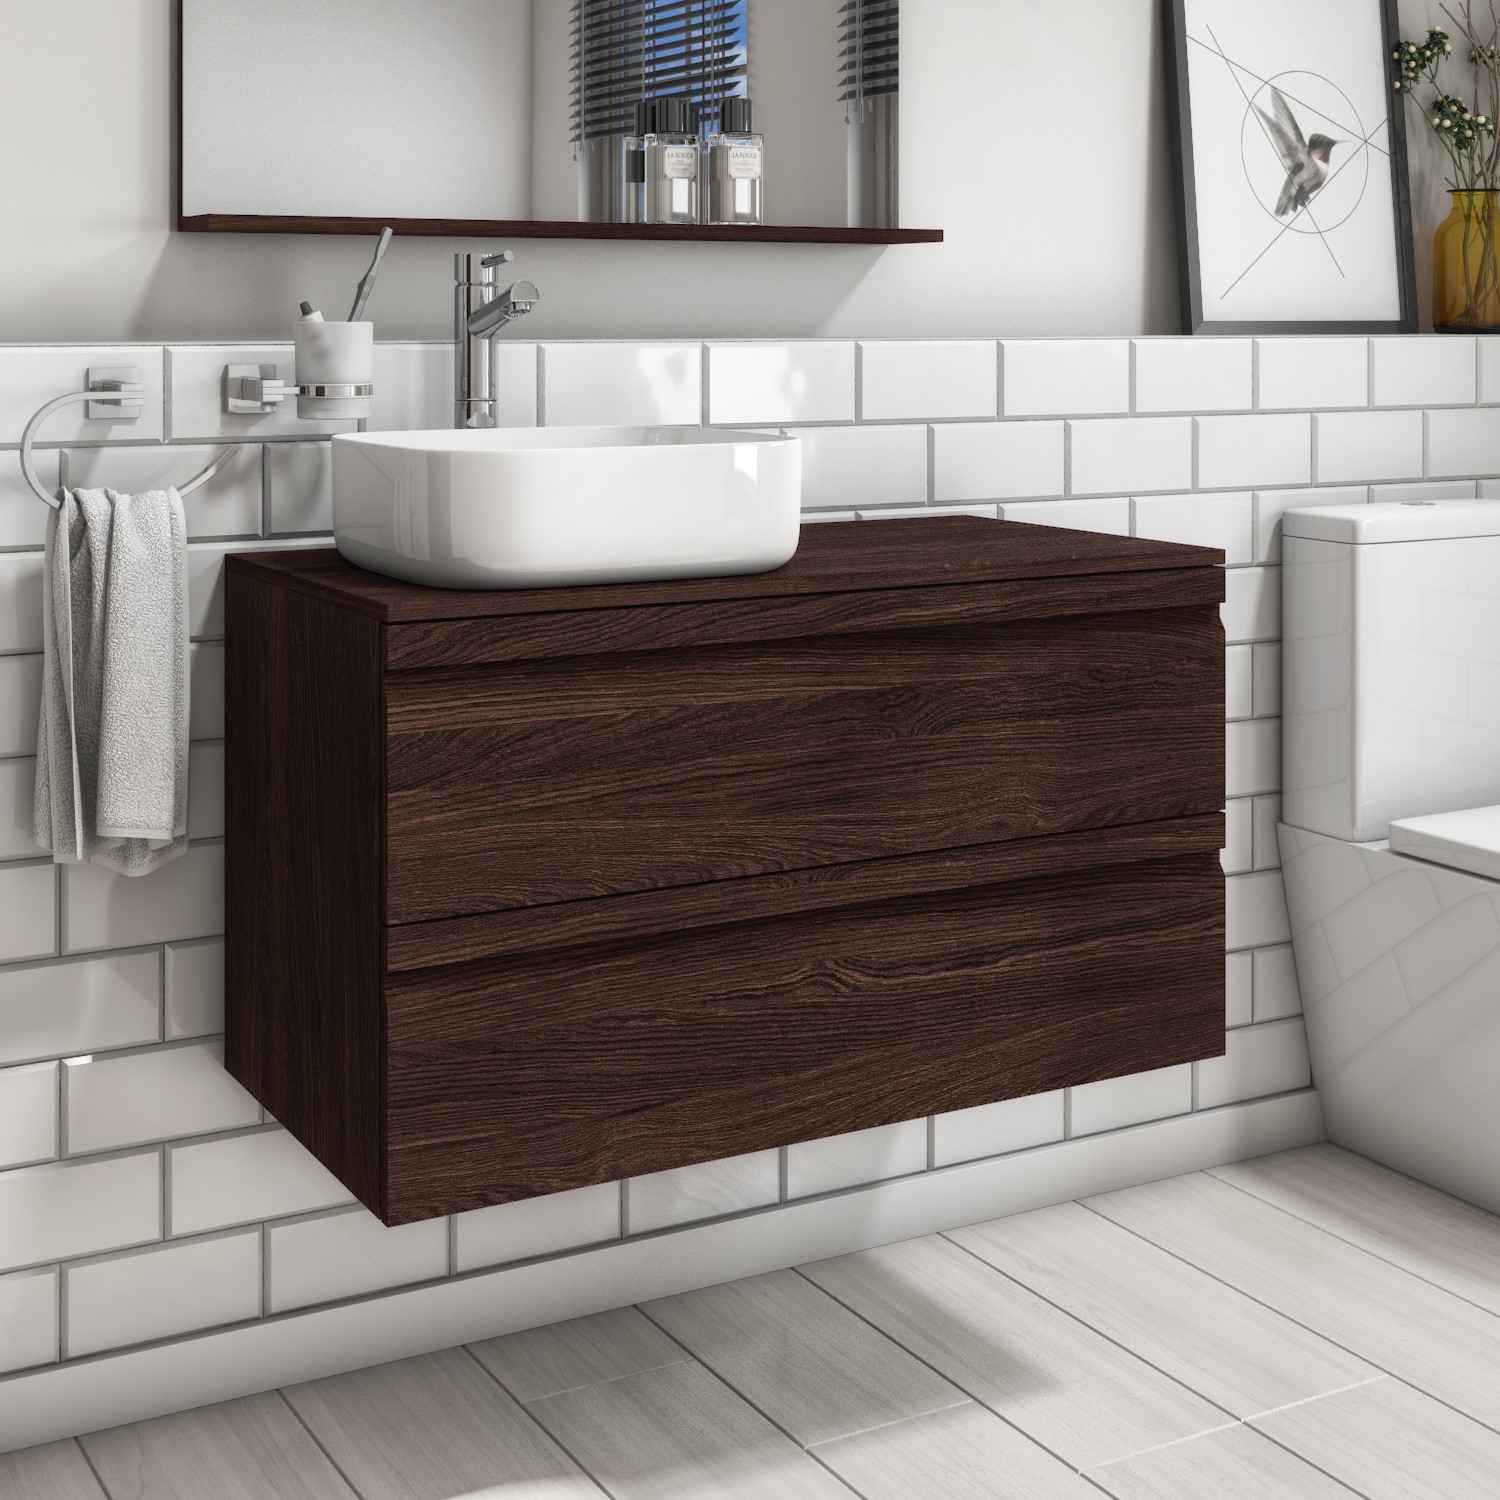 900mm Dark Oak Wall Hung Countertop, Wooden Vanity Unit With Countertop Sink